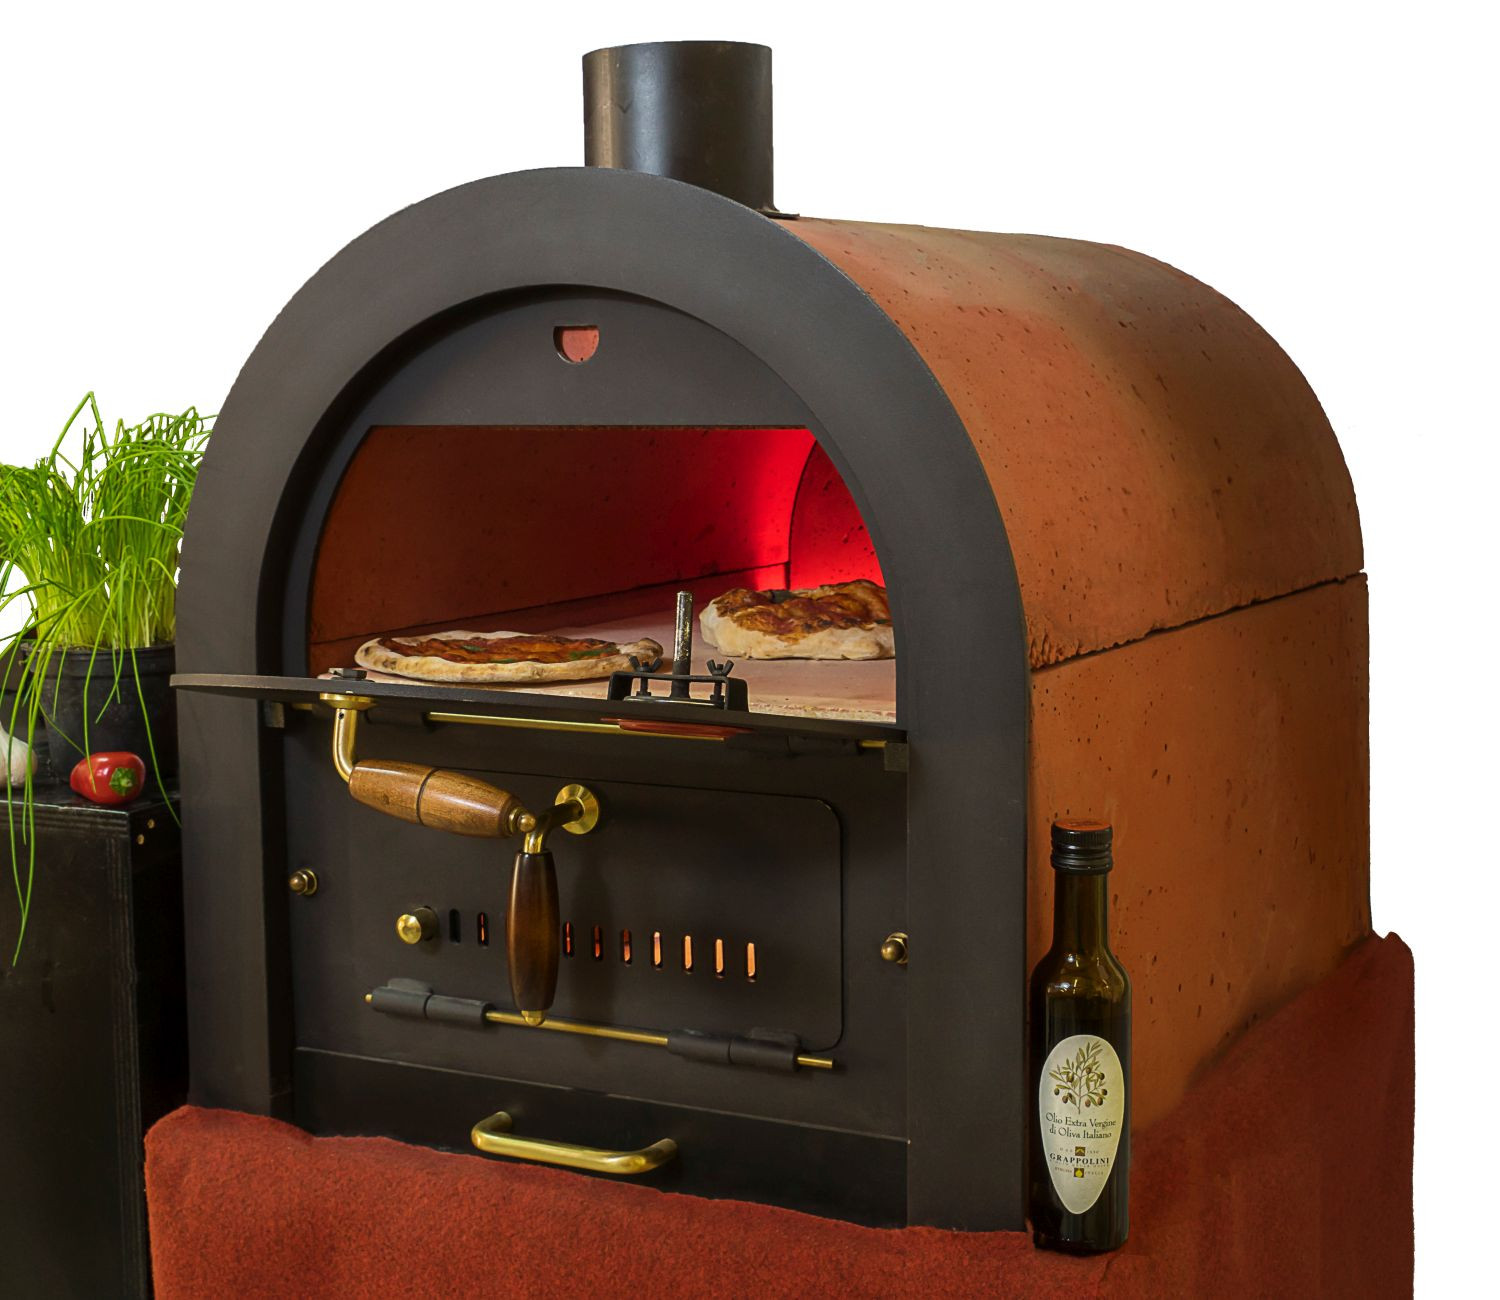 Steinbackofen Holzbackofen Pizzaofen Bausatz Valoriani mit indirekter Befeuerung damit backen Sie die perfekte italienische Pizza